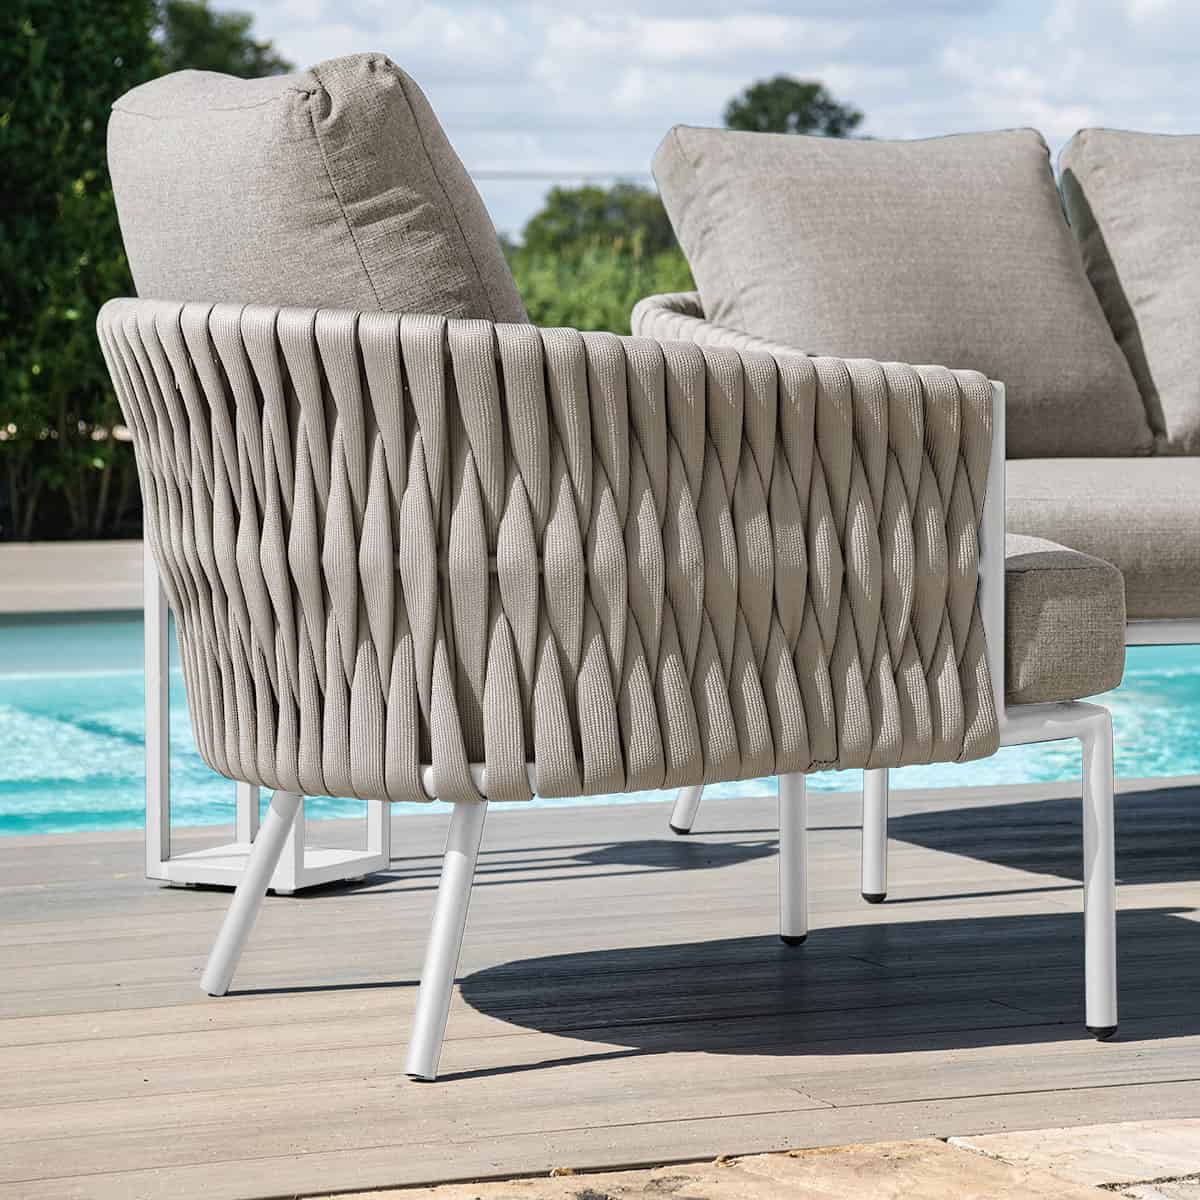 Marina 2 Seat Sofa Set Beige Rope and Aluminium Outdoor Furniture #colour_sandstone